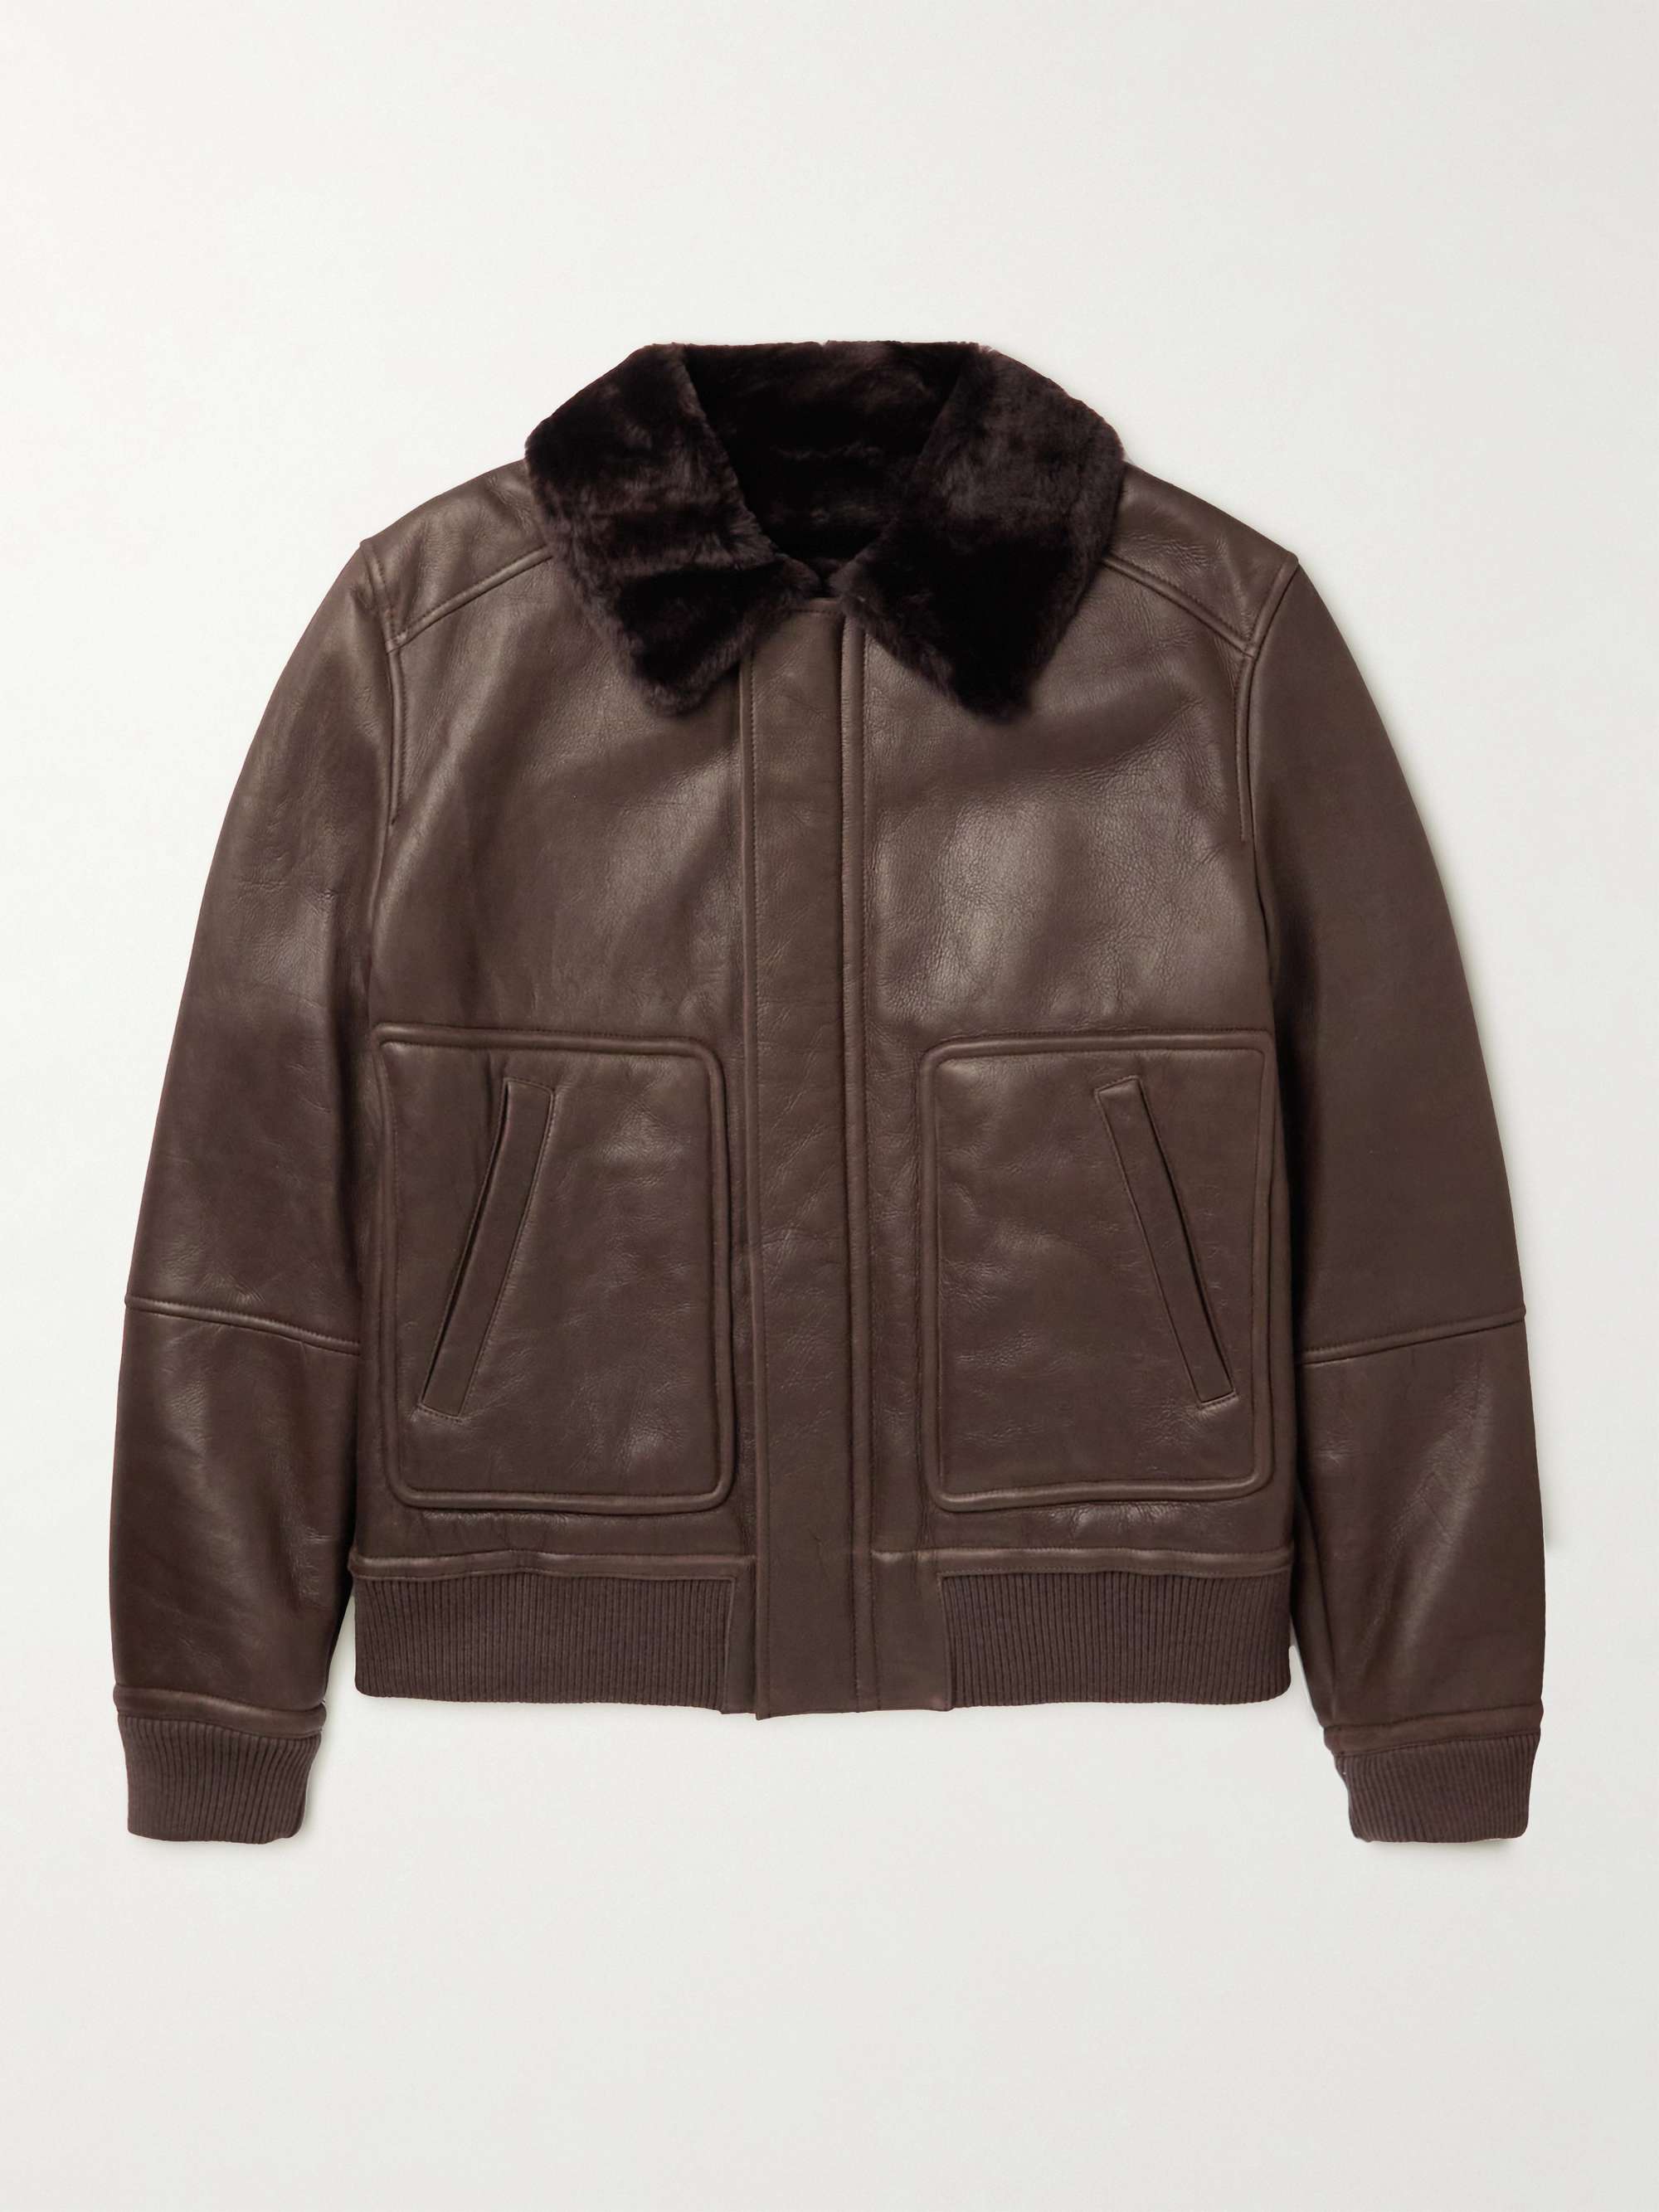 YVES SALOMON Shearling-Lined Leather Jacket for Men | MR PORTER